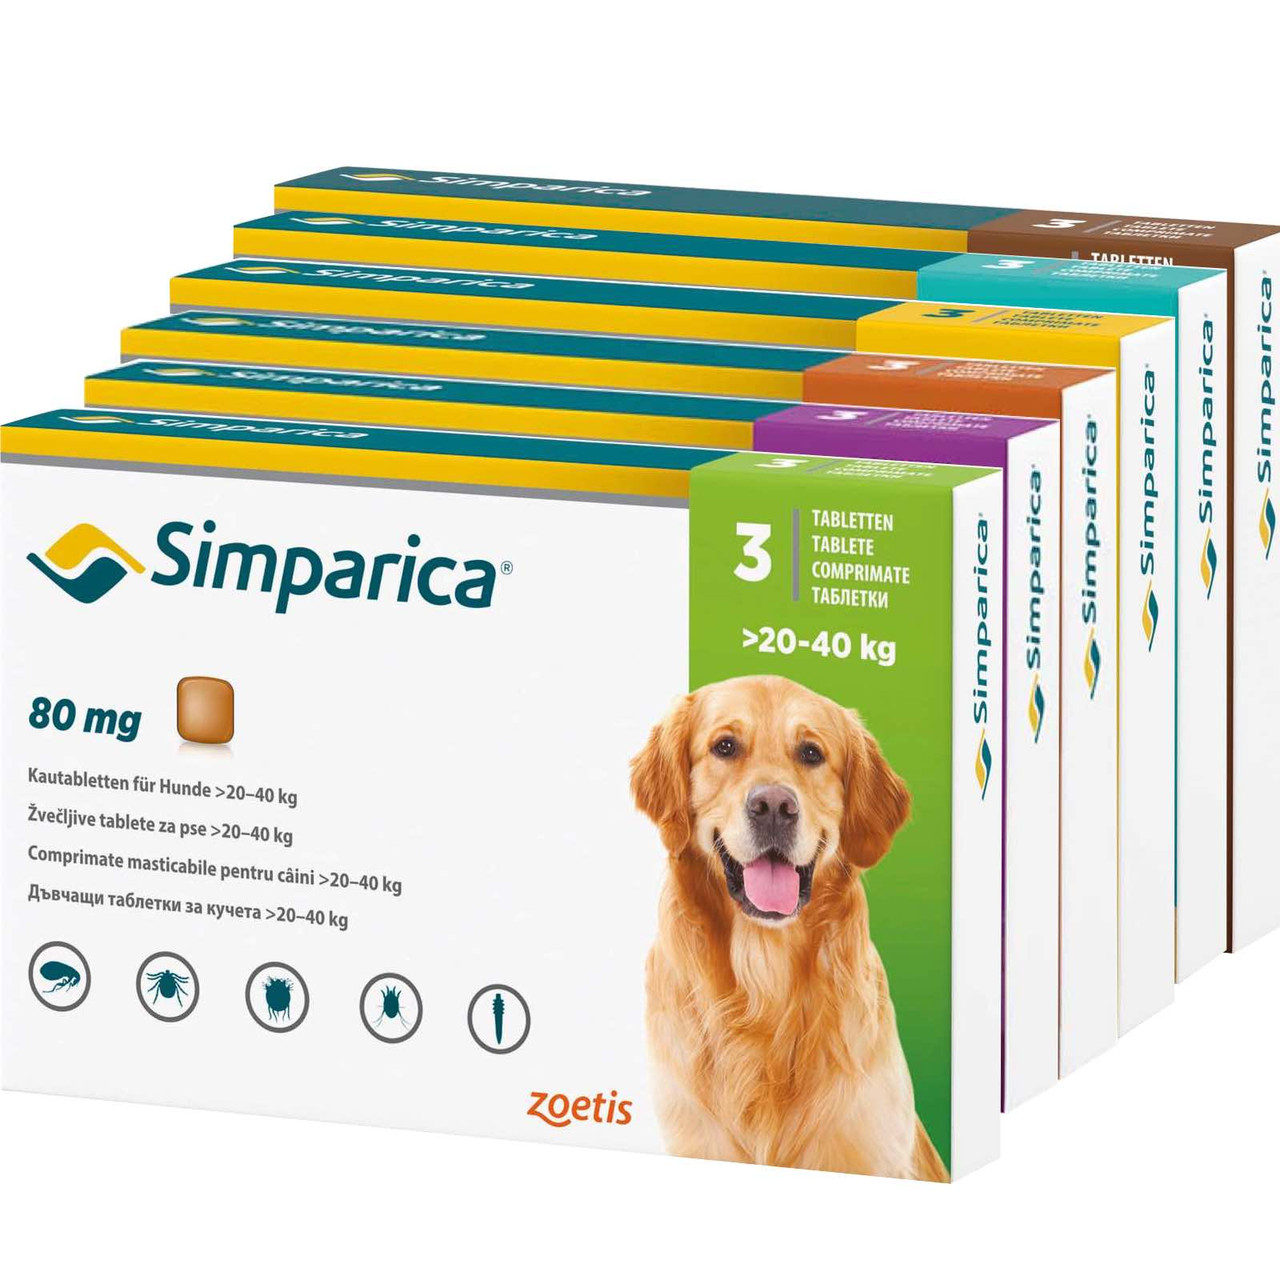 20% di sconto su Simparica Compresse masticabili antipulci e antizecche per cani presso Atlantic Pet Products